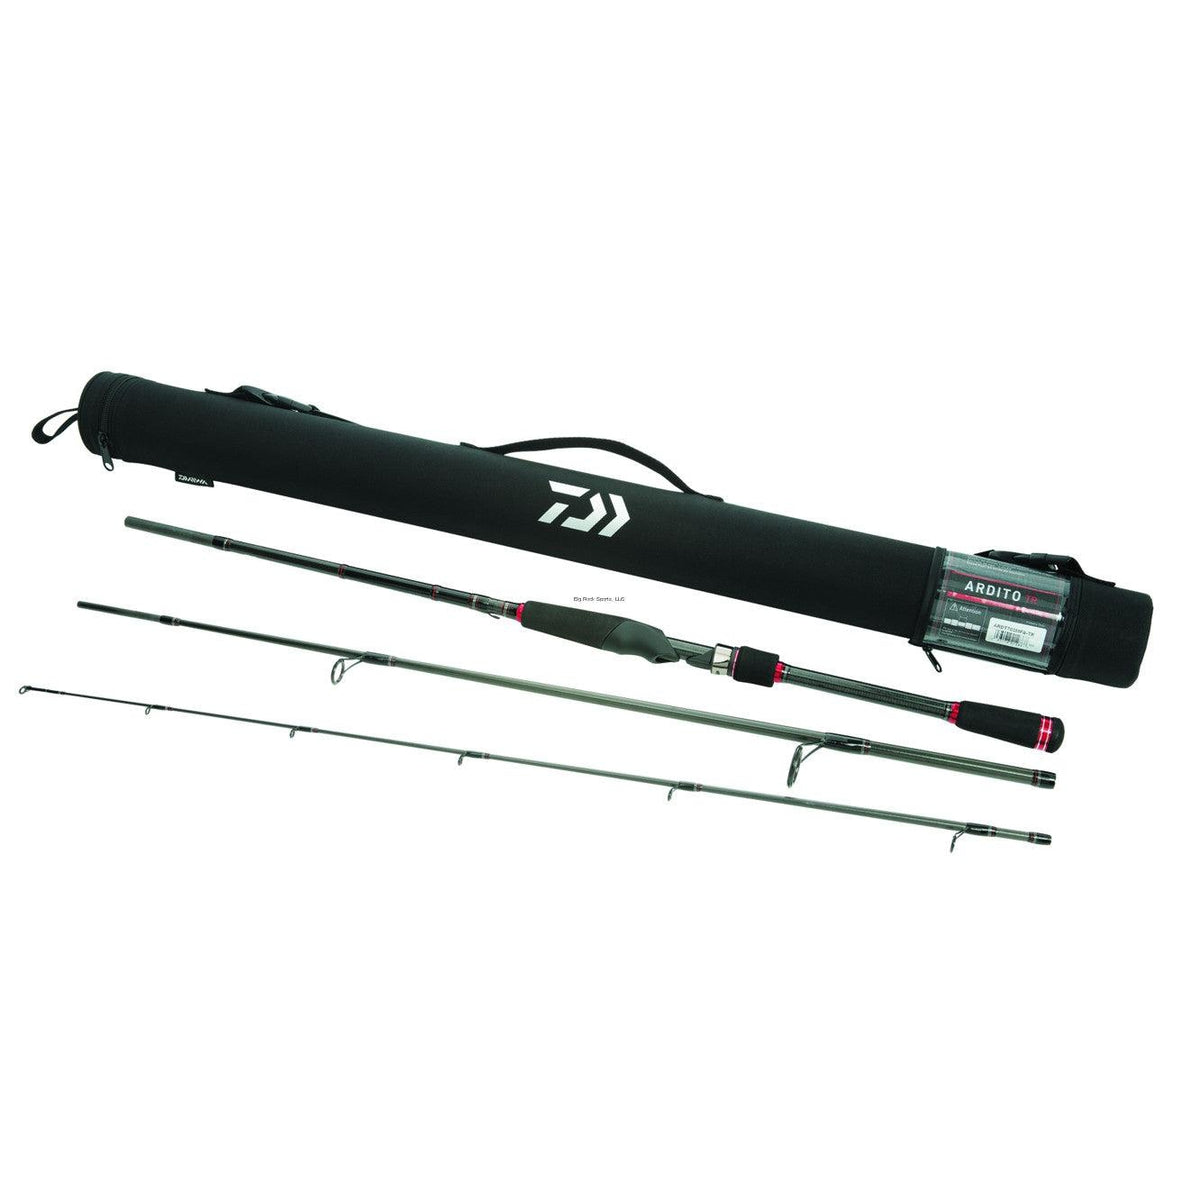 PLAT/21 basara 100l free shipping/daiwa-Anglers Shop-Fishing Rods